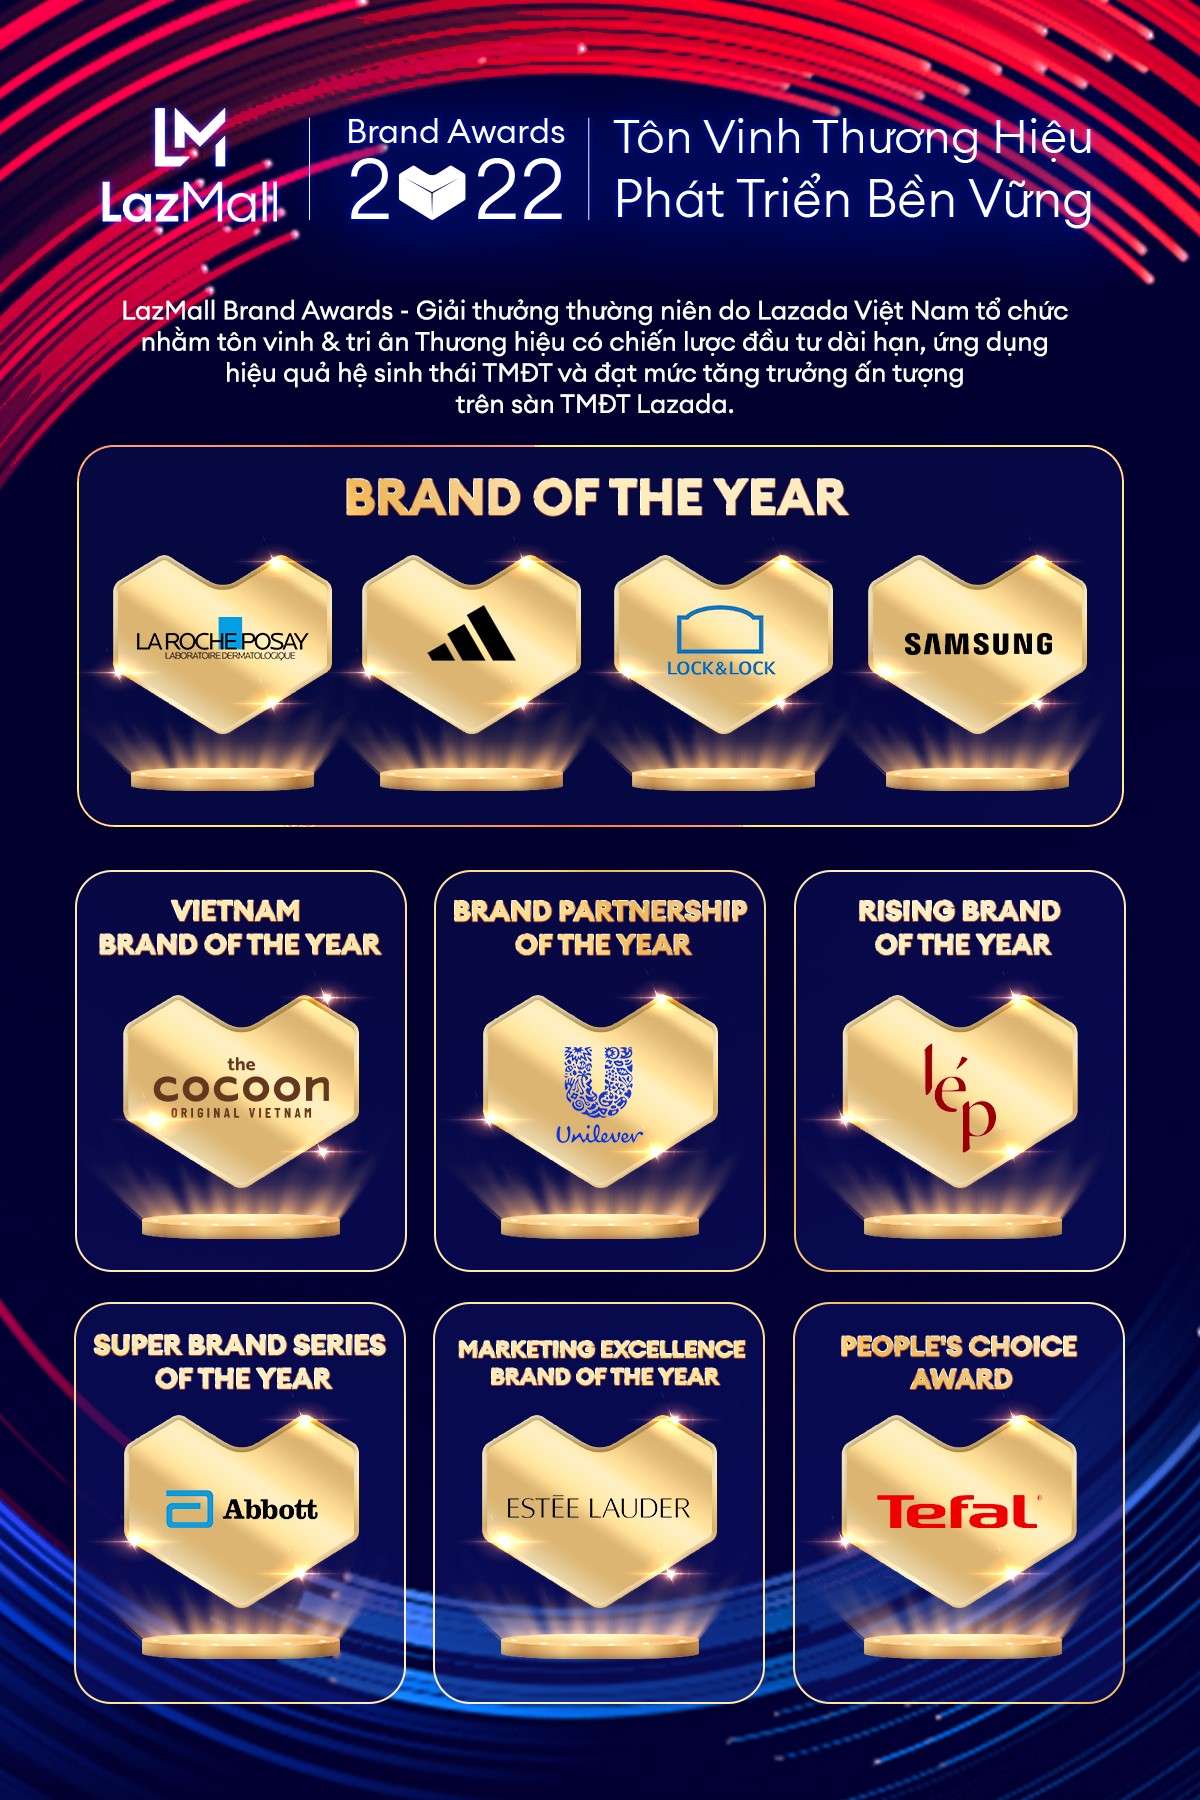 Lazada vinh danh 10 thương hiệu tại LazMall Brand Awards 2022